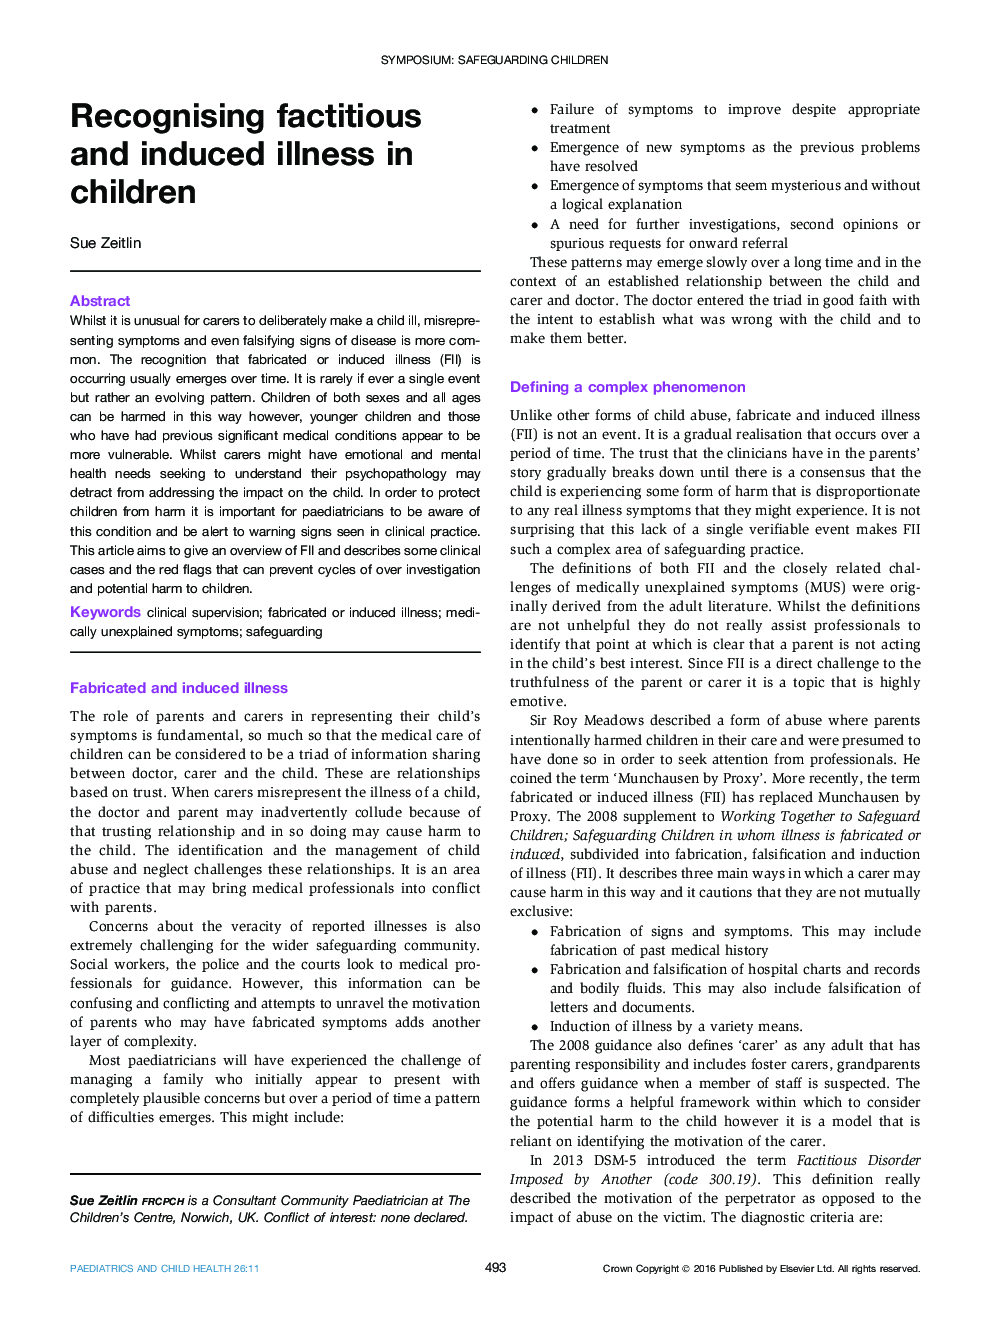 سمپوزیوم: حفاظت از اطفال در شناخت بیماری های مبتلا و مبتلا به بیماری در کودکان 